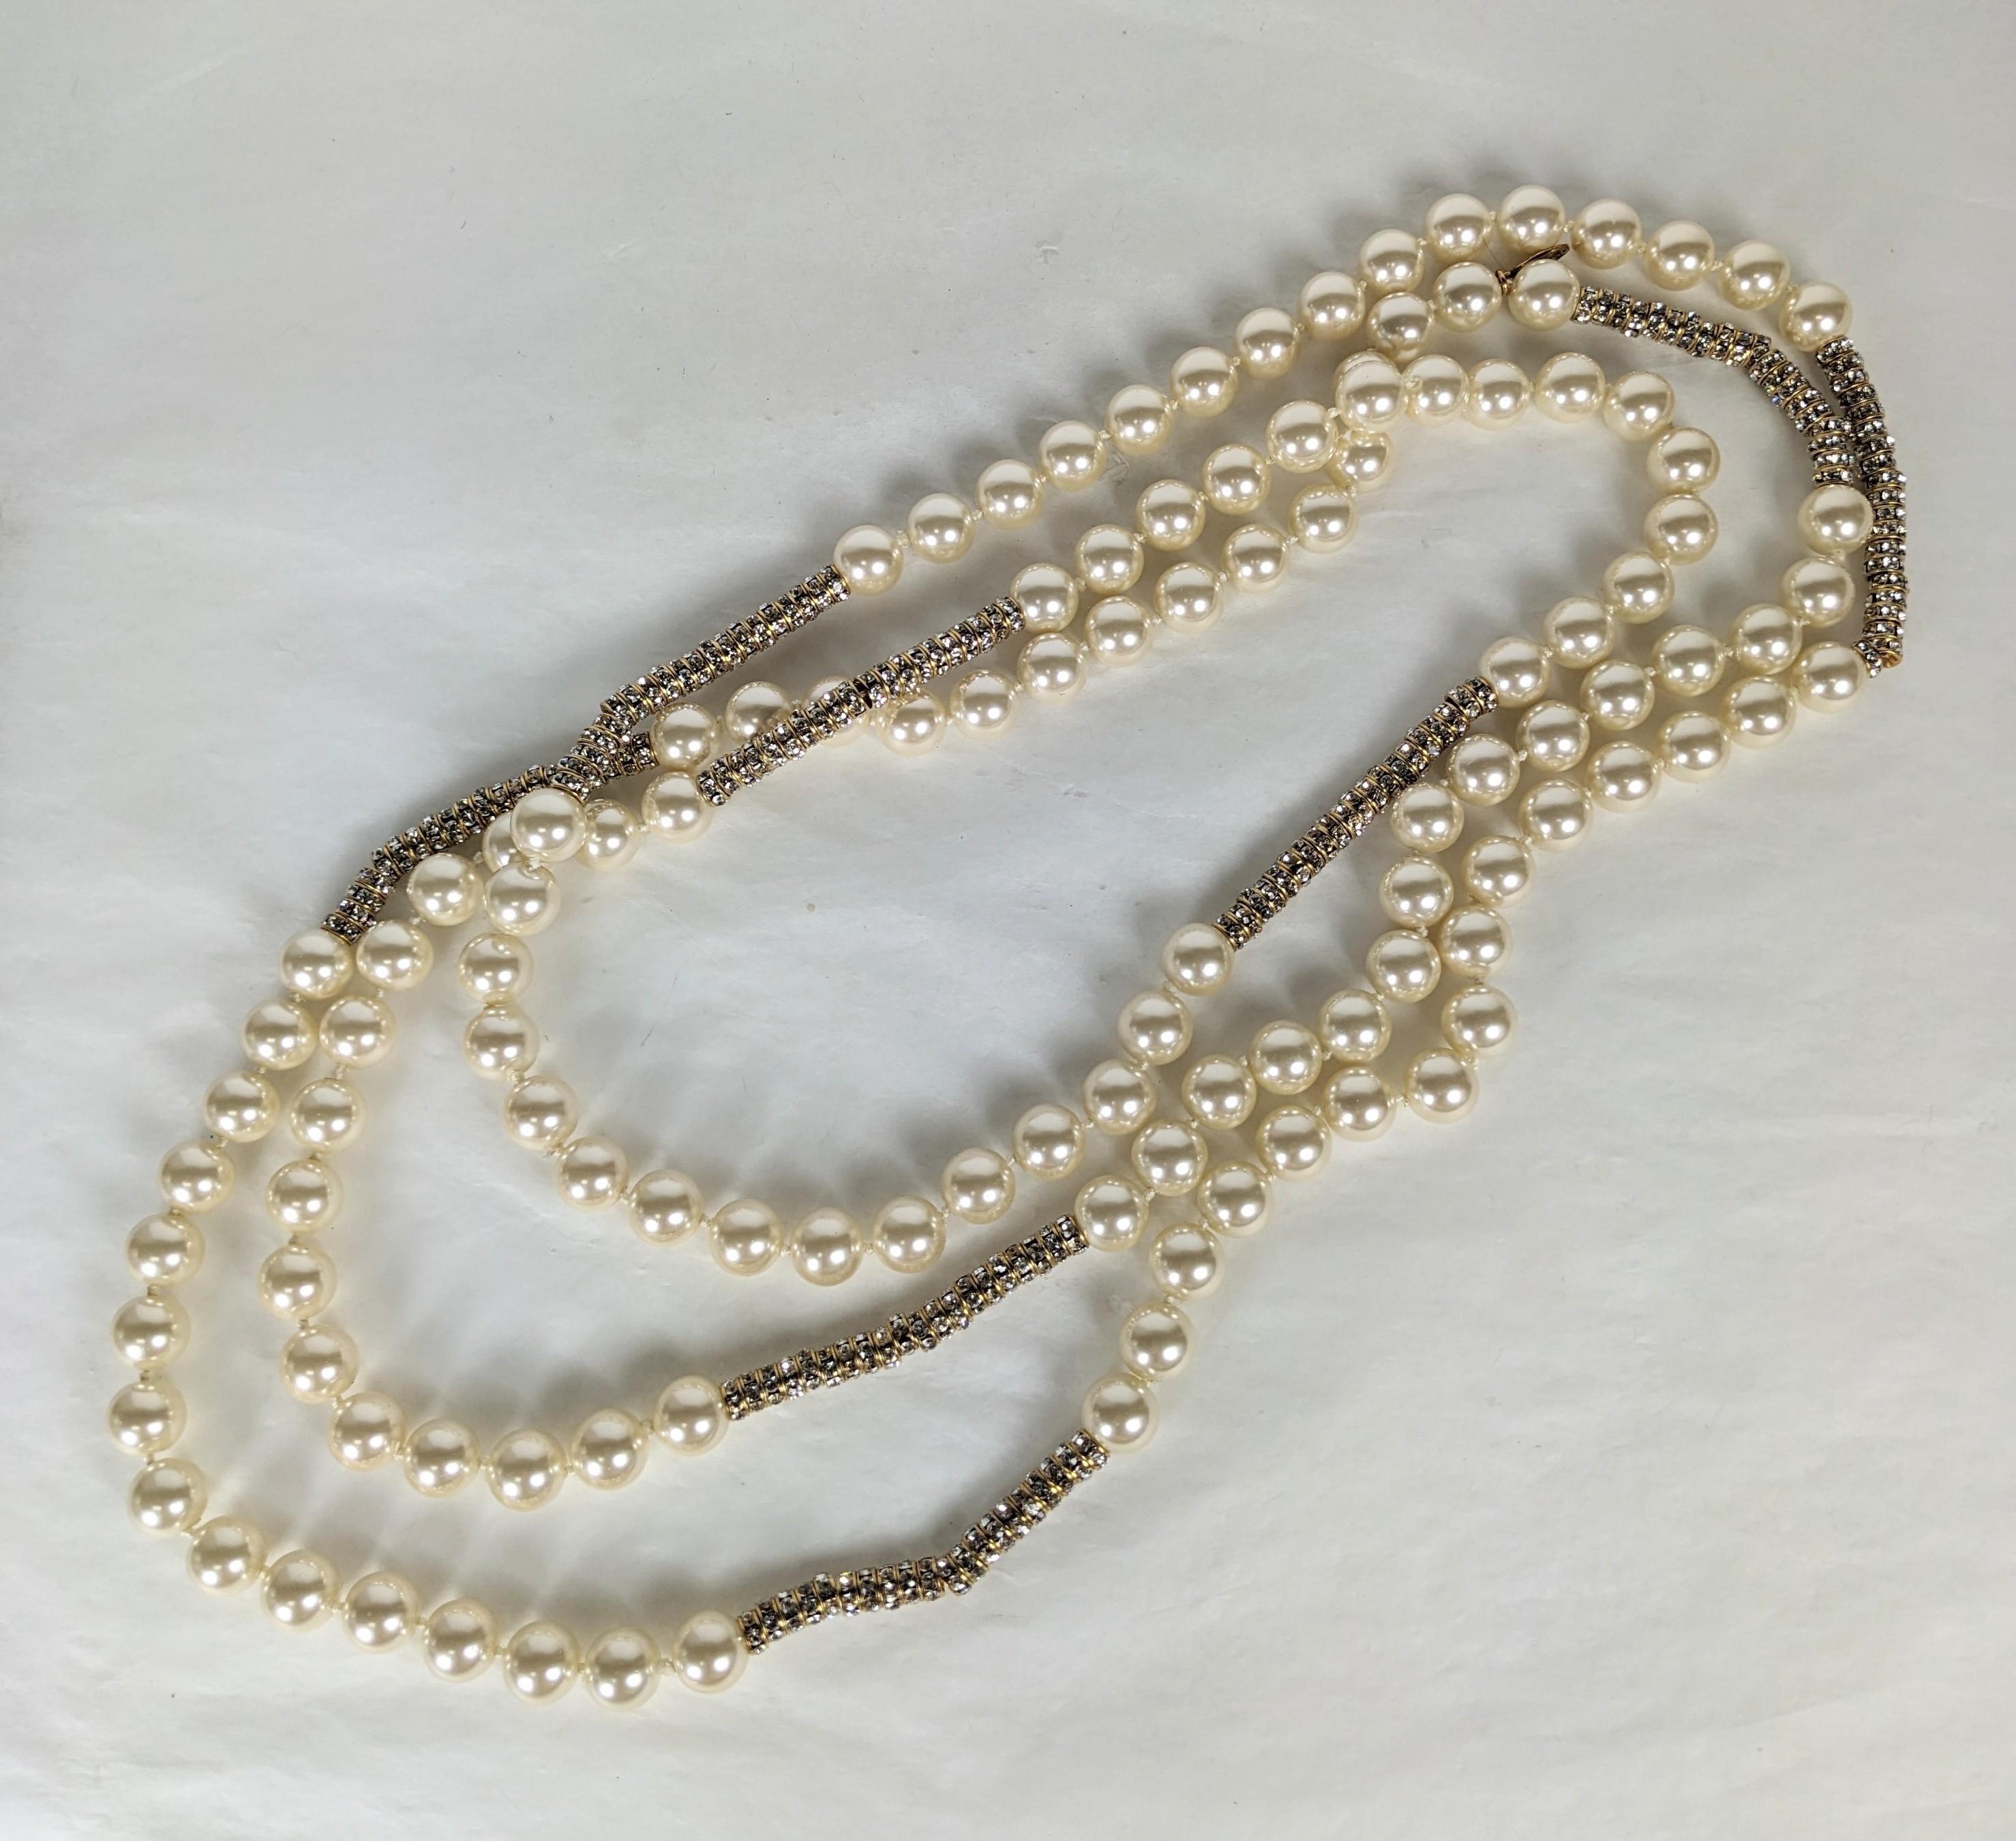 Super rare et versatile collier Chanel en perles et cristaux sans fin. Incroyablement long et si polyvalent qu'on peut l'envelopper ou le porter seul. Fausses perles nouées à la main avec des capuchons de lingots dorés et des centaines de rondelles